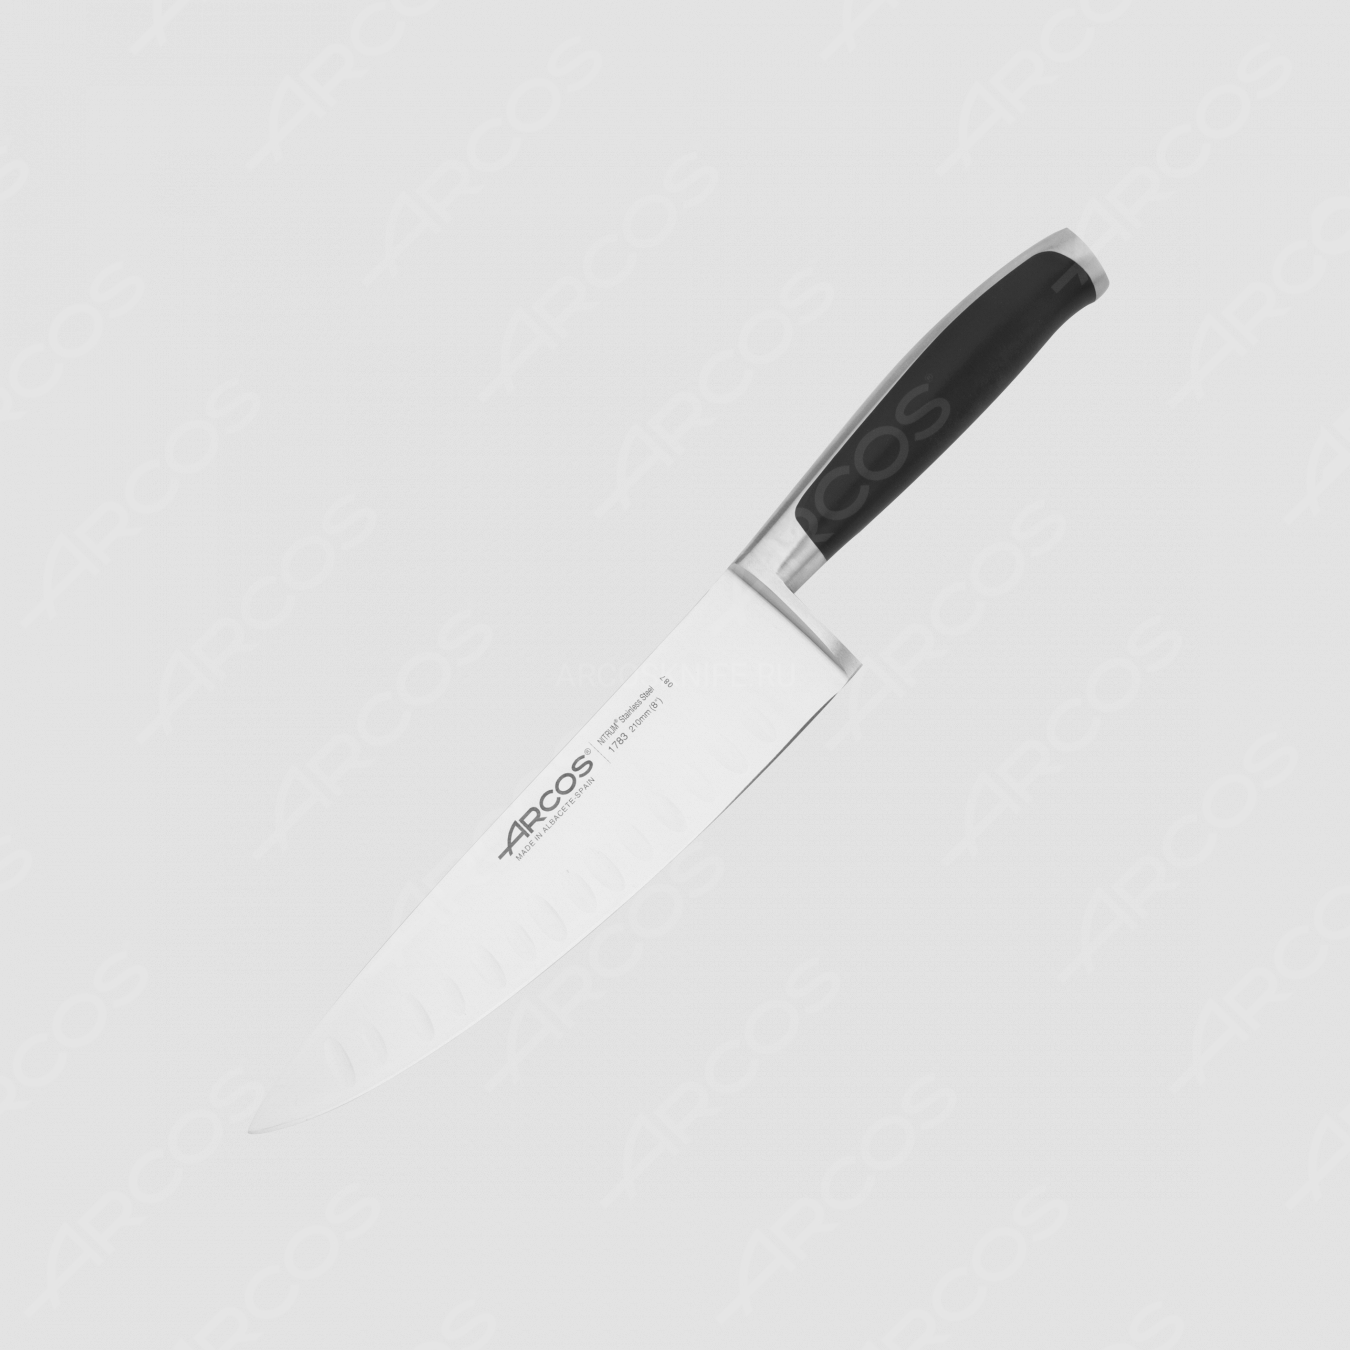 Профессиональный поварской кухонный нож 21 см, серия Kyoto, ARCOS, Испания